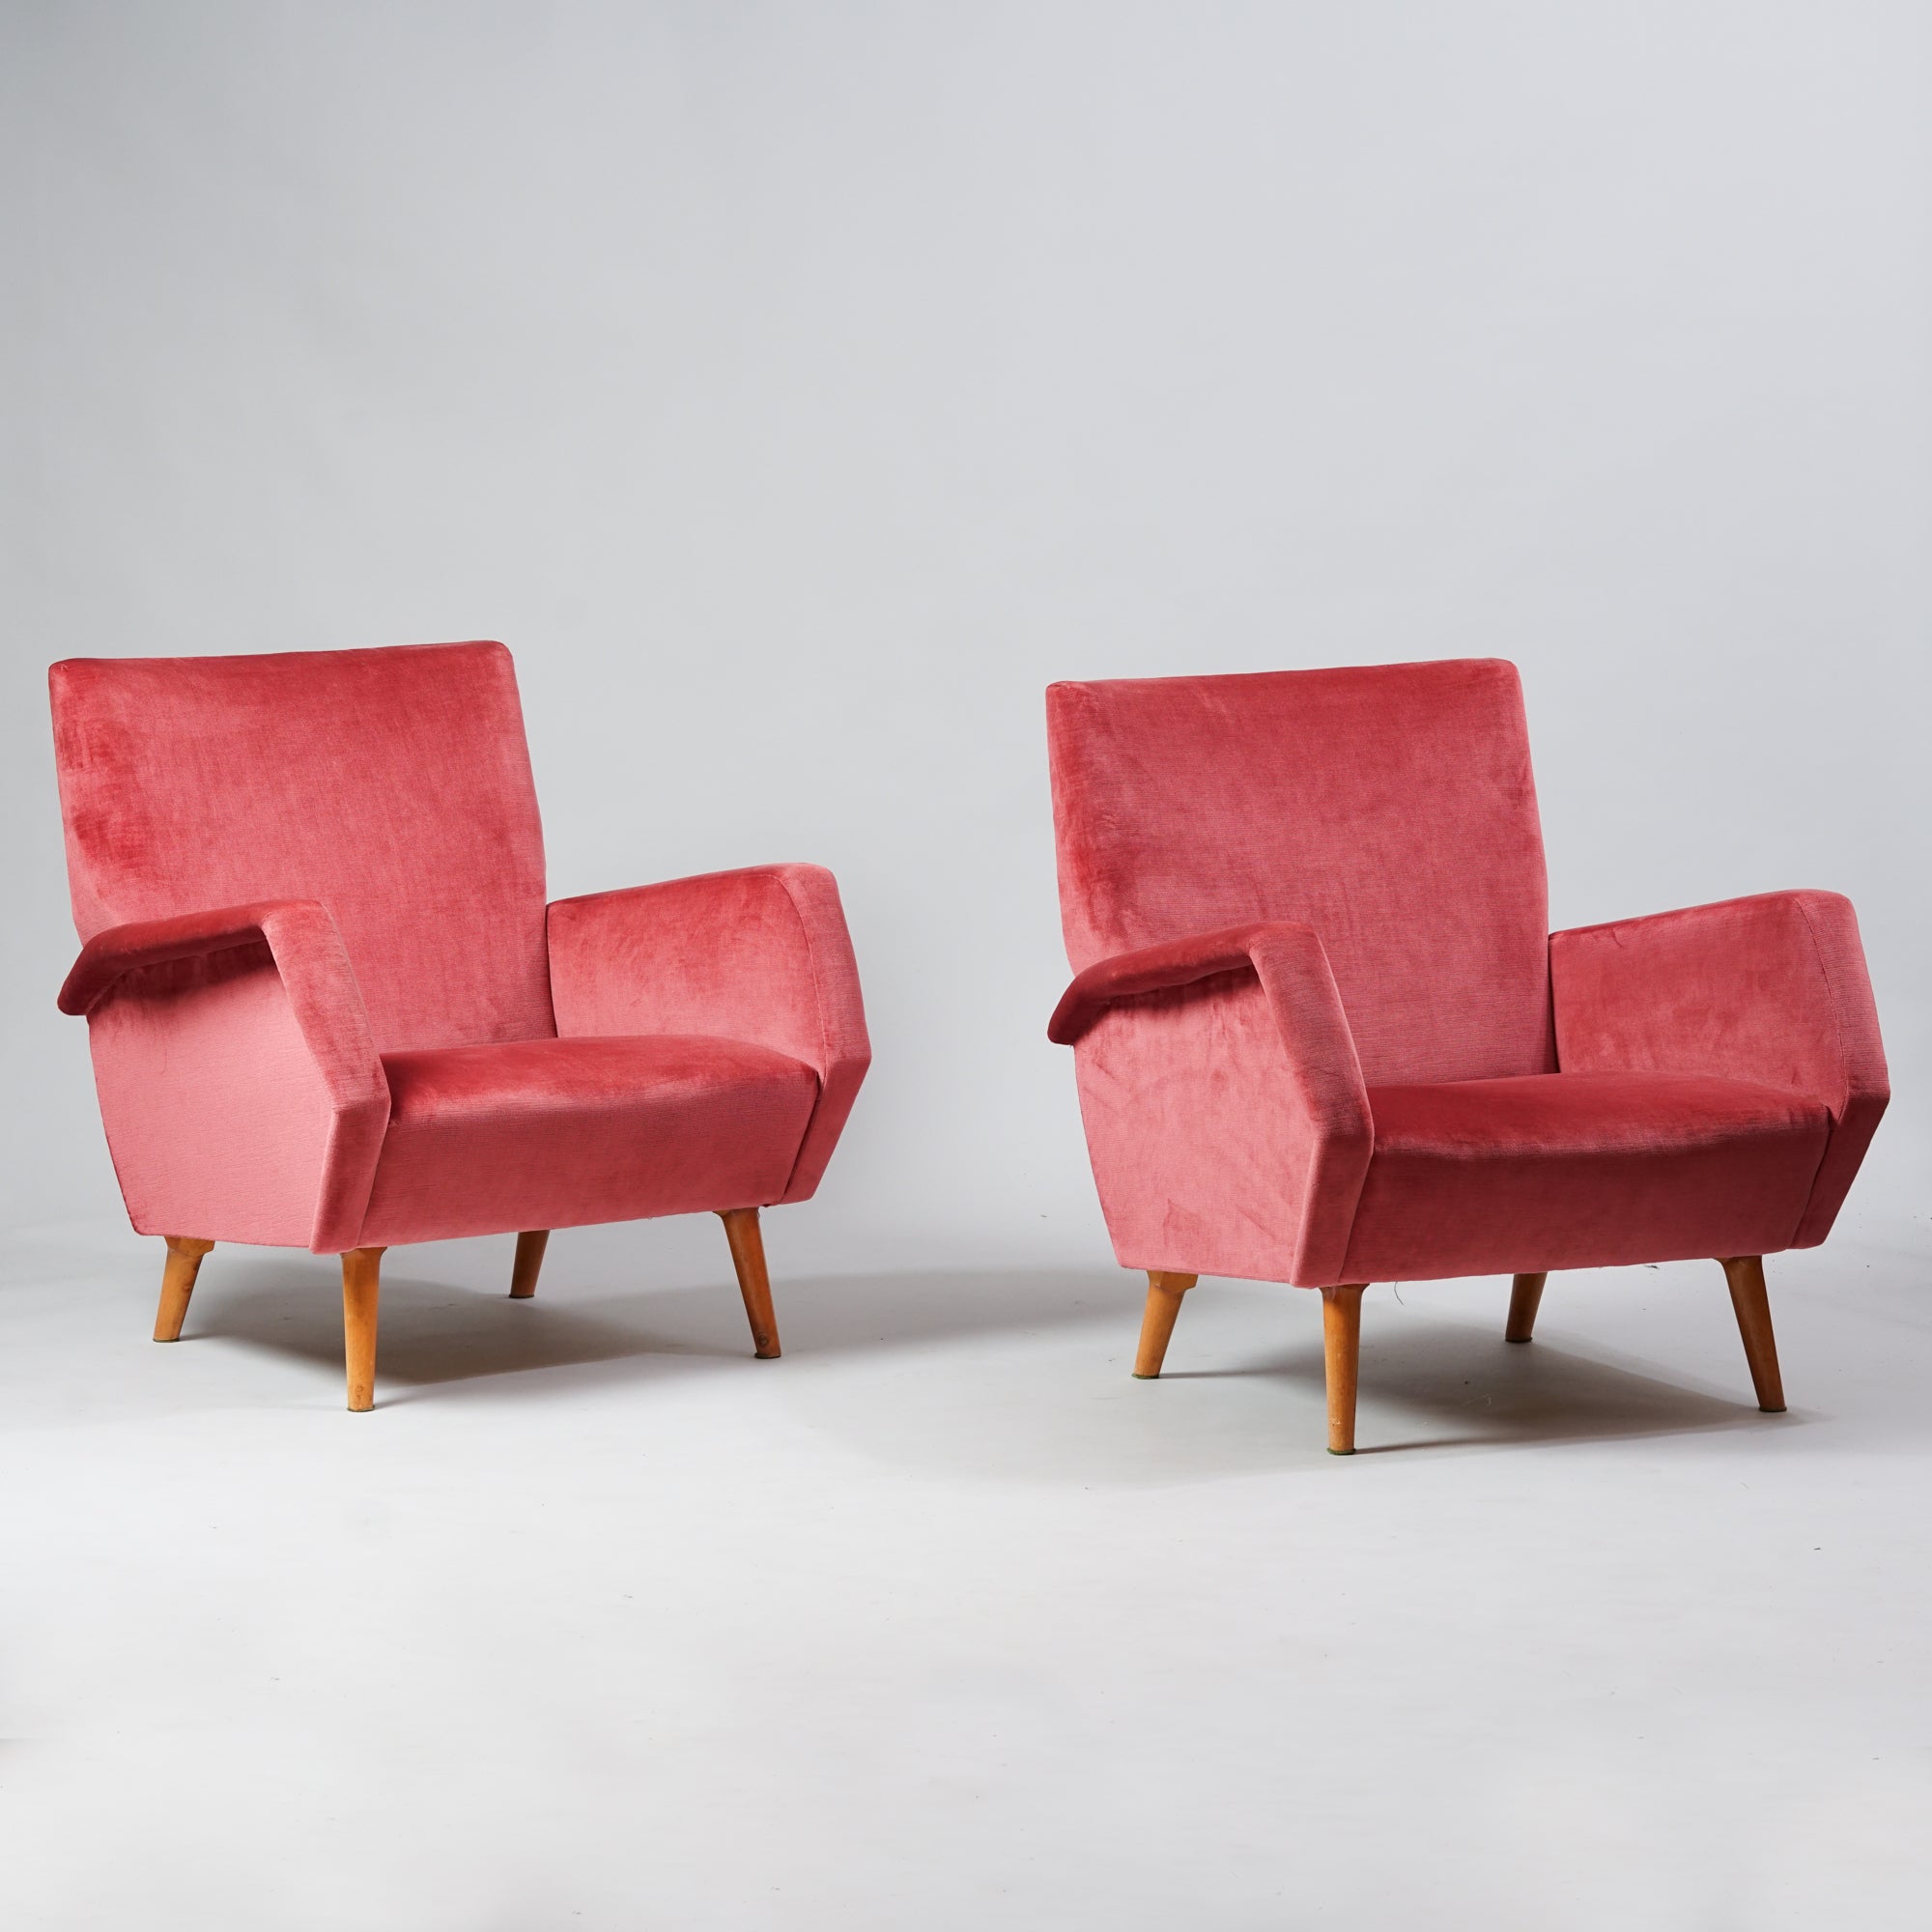 Kaksi samanlaista nojatuolia, joissa tammirunko. Nojatuolit ovat päällystetty vaaleanpunaisella plyysikankaalla. 